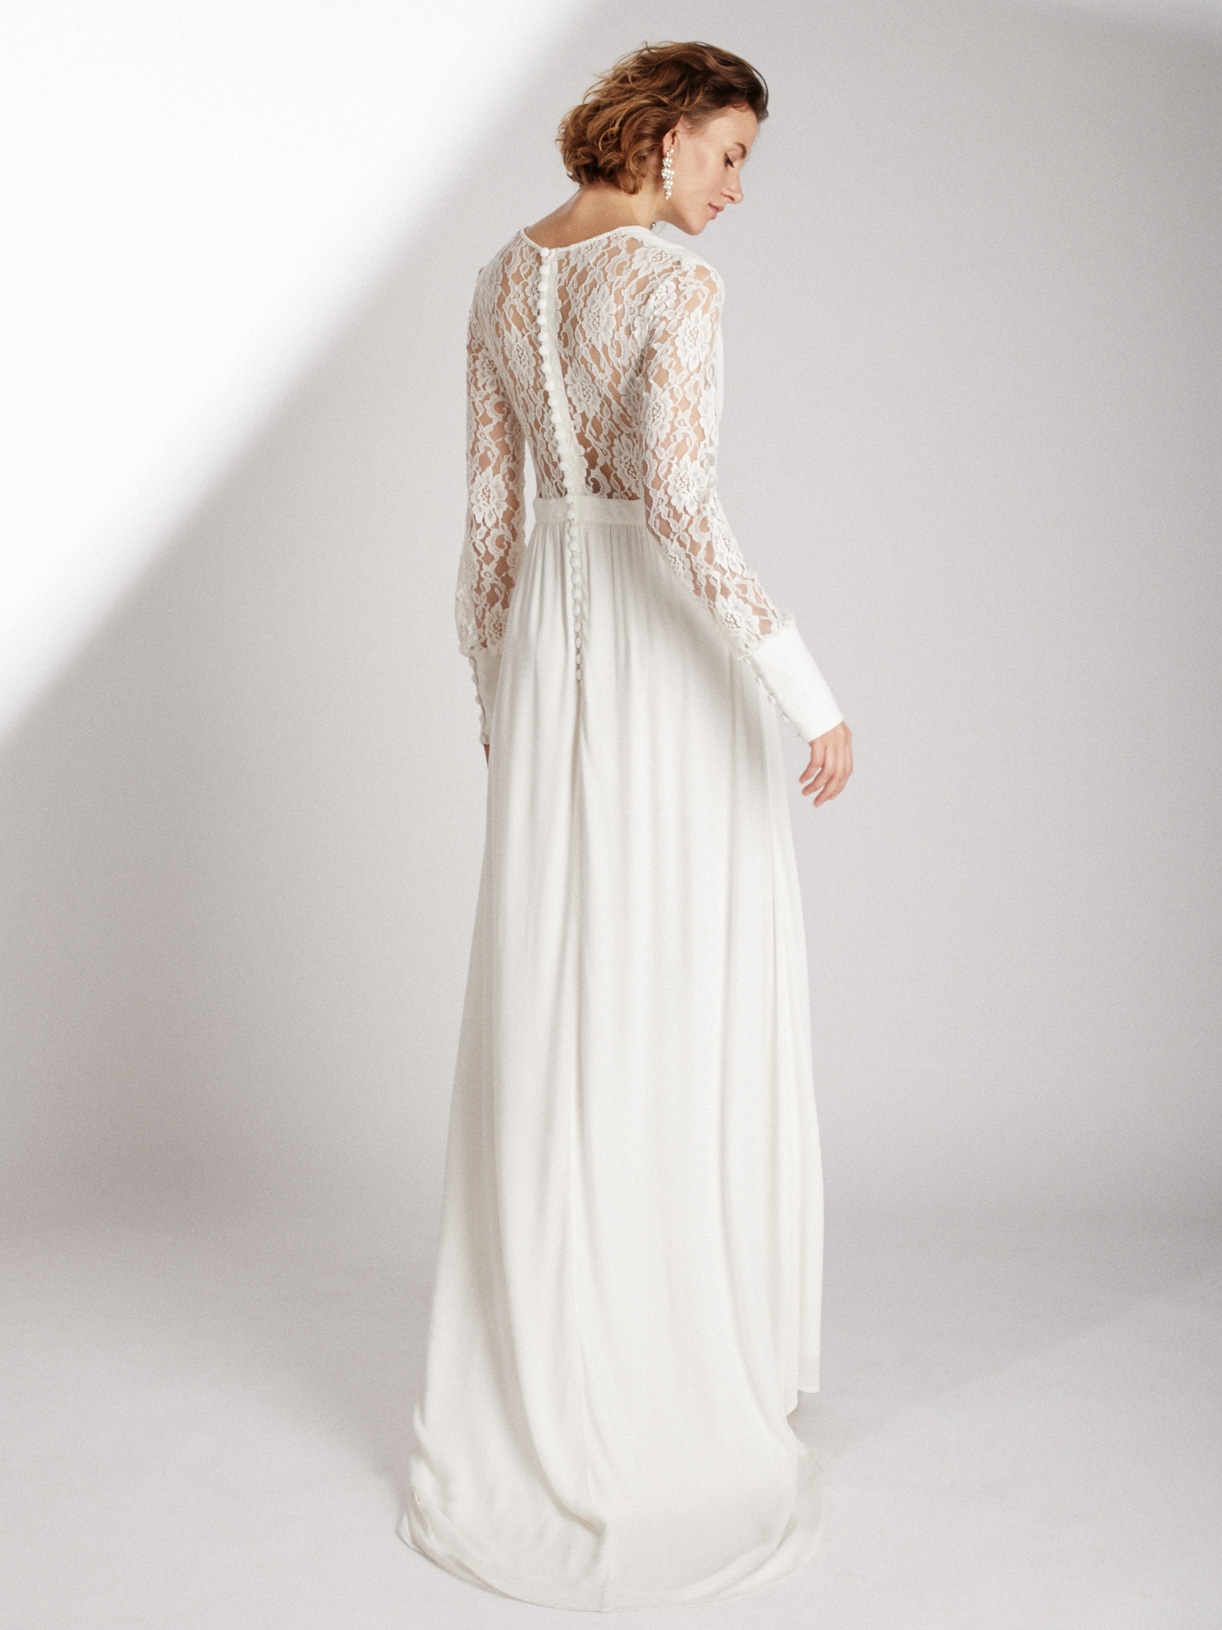 Robe de mariée longue fendue en dentelle écoresponsable - Creatrice de robe de mariée éthique et bio a Paris - Myphilosophy